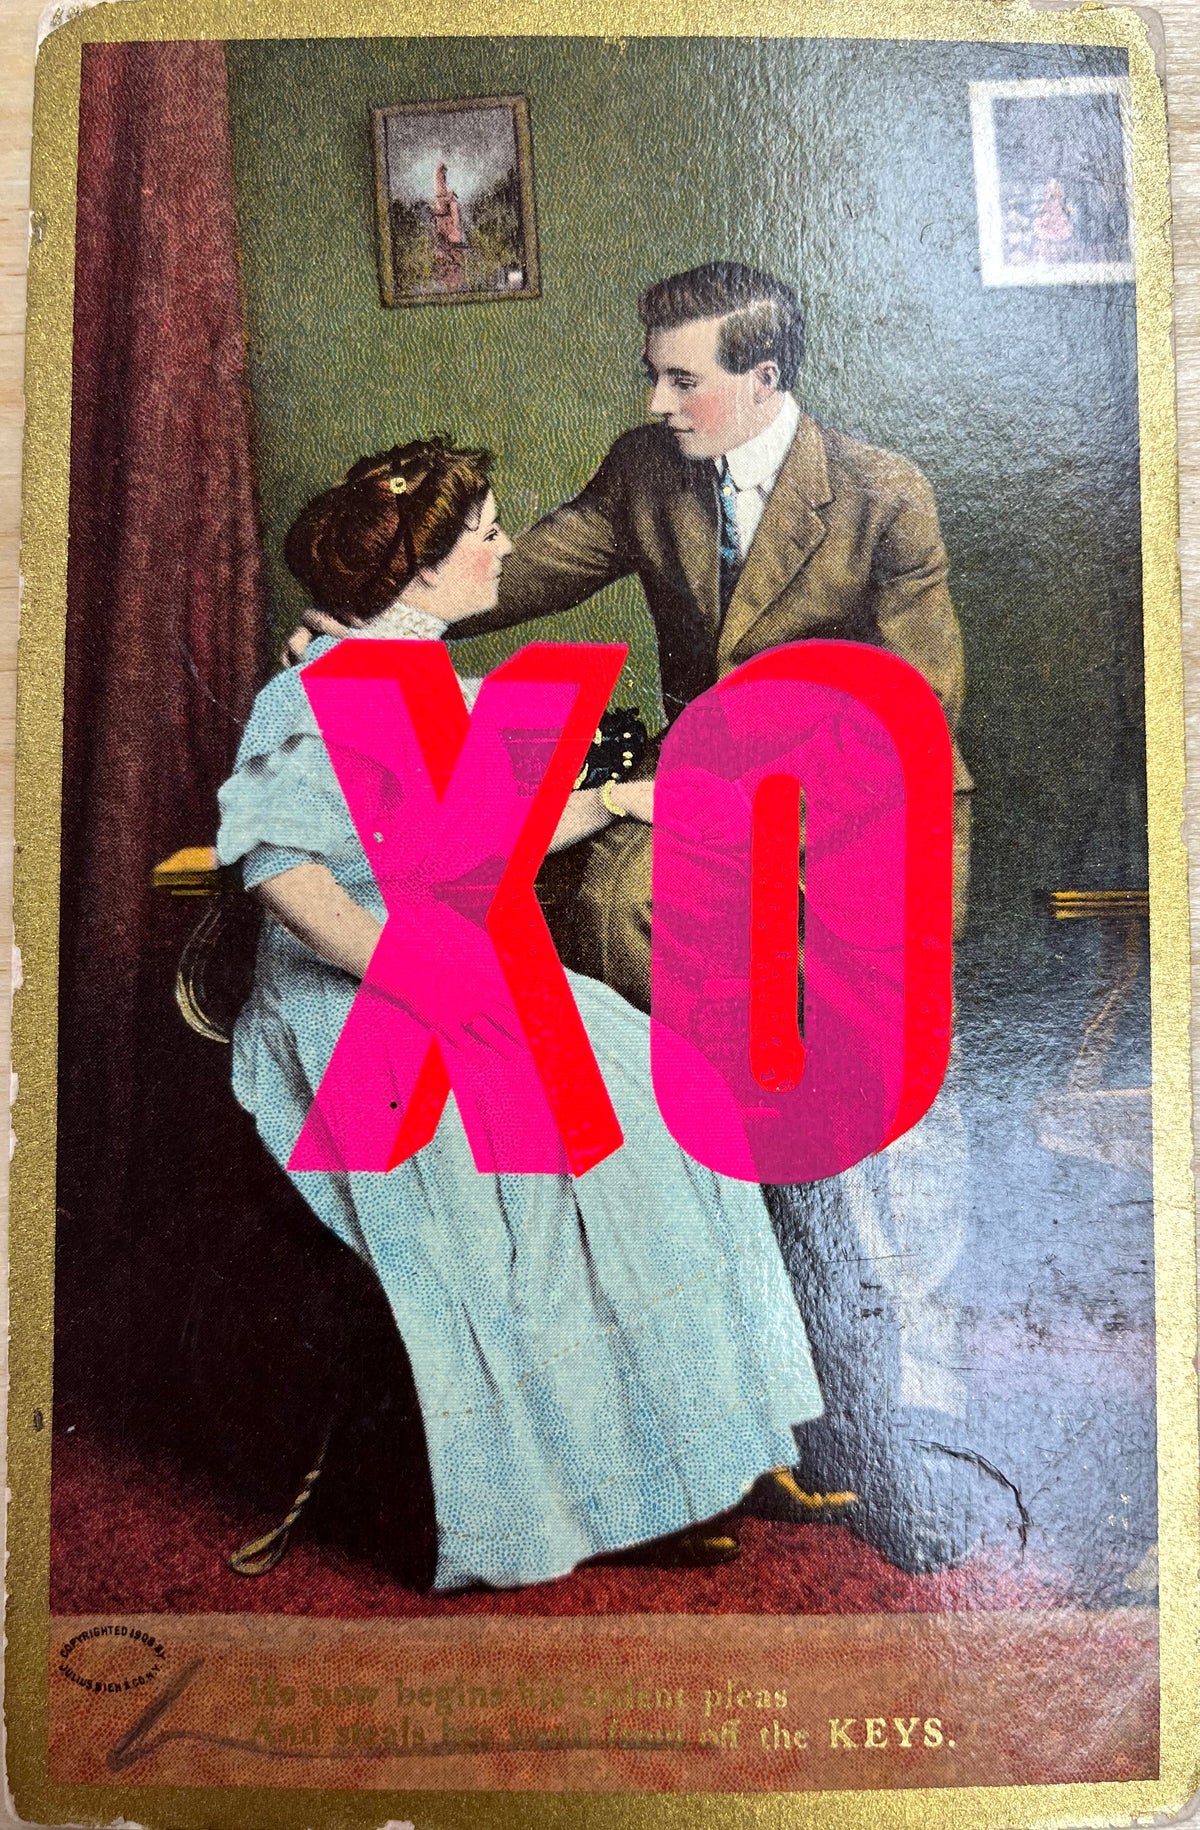 XO XO by Dave Buonaguidi